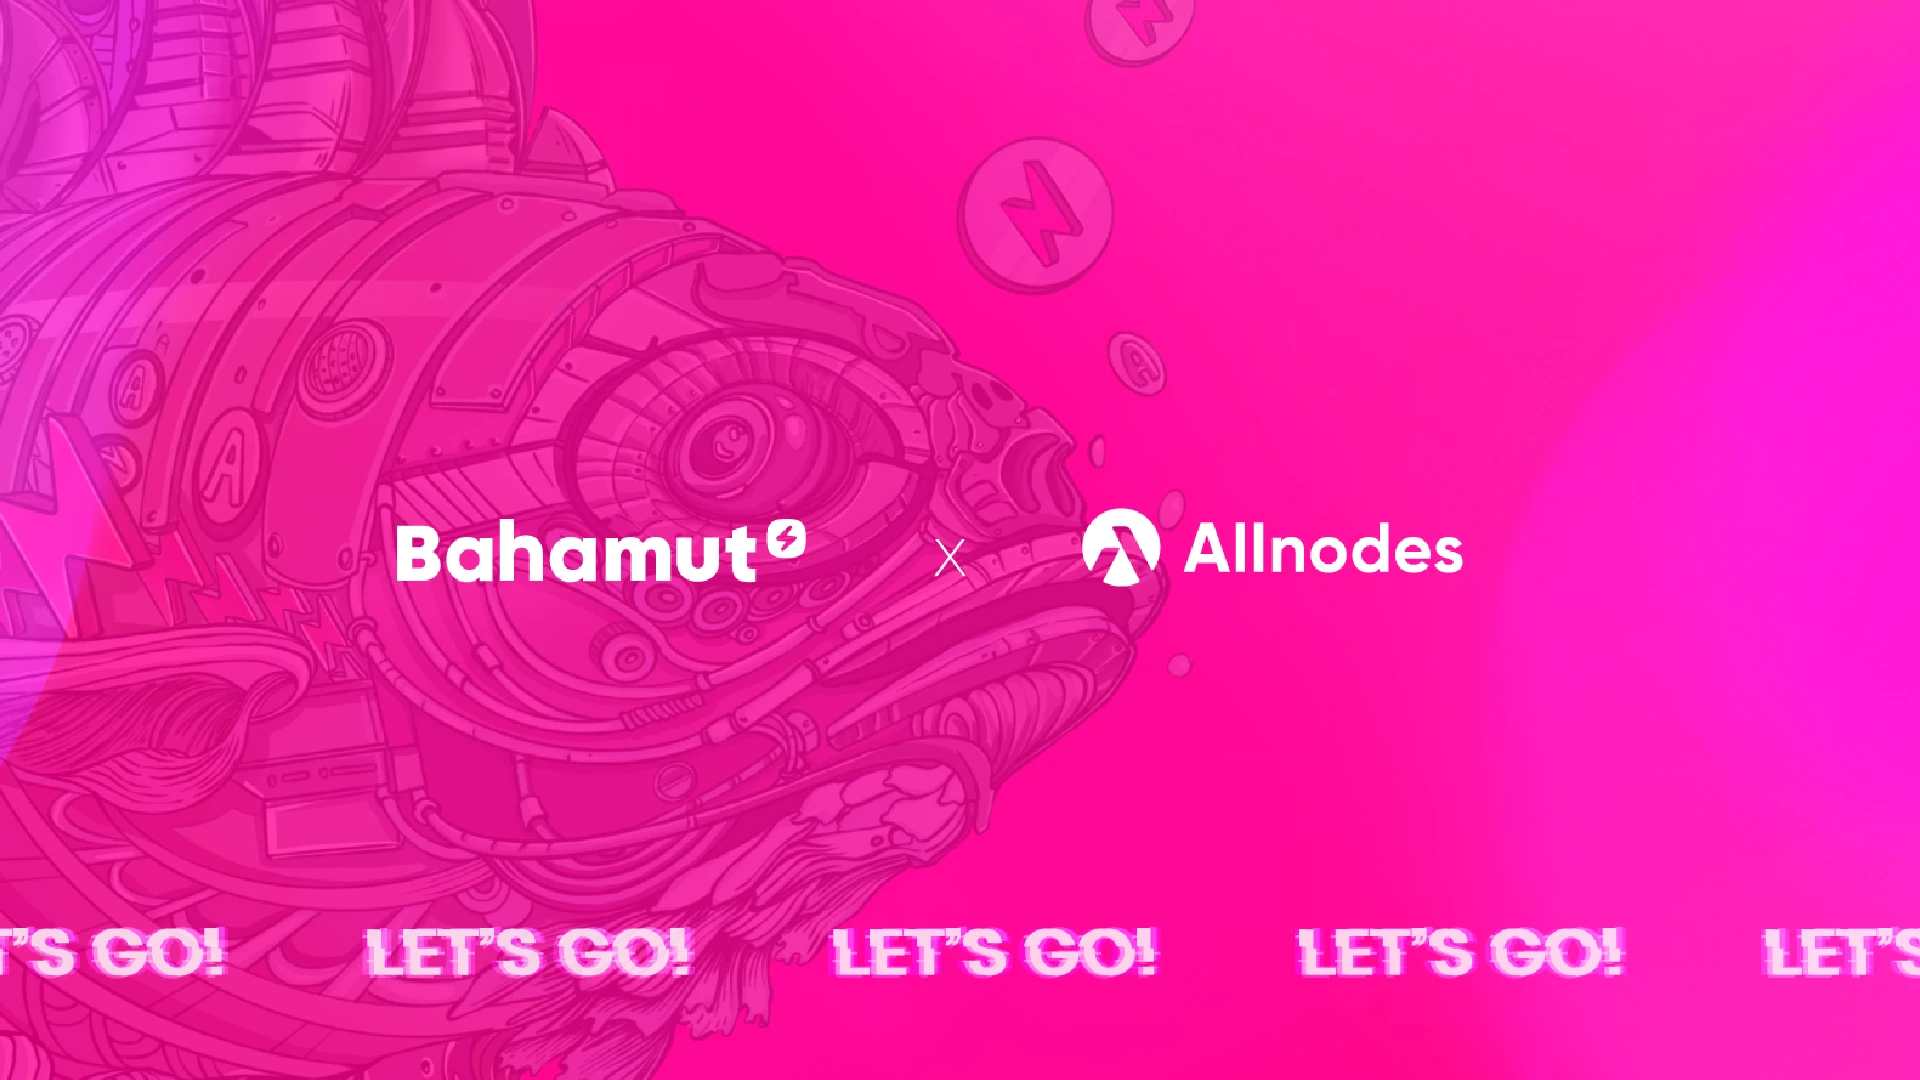 Bahamut annonce un nouveau partenariat, cette fois avec Allnodes